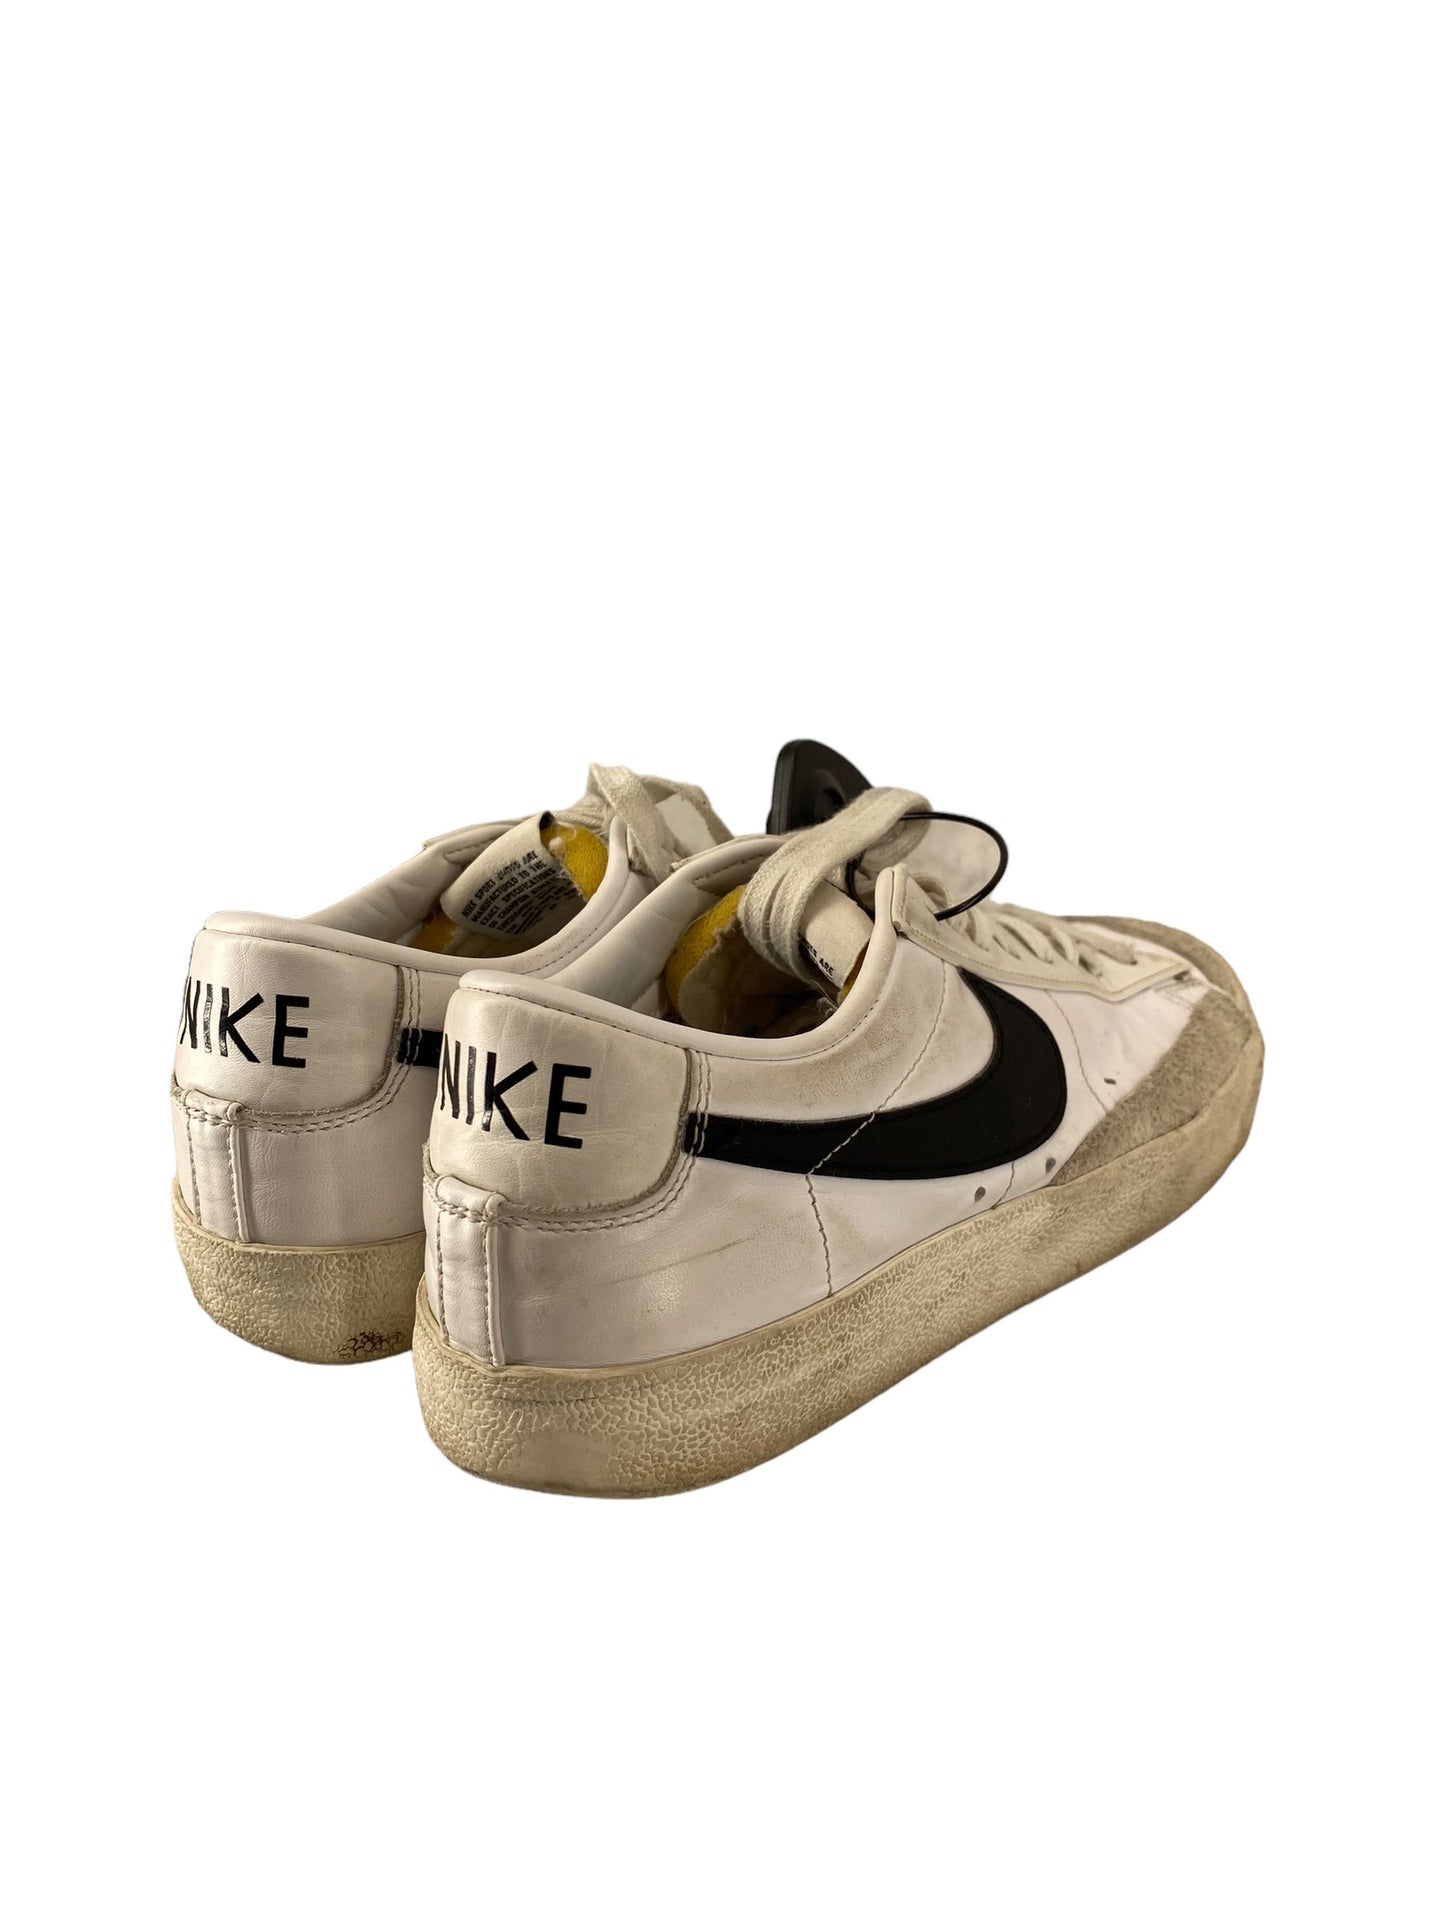 White Shoes Athletic Nike, Size 9